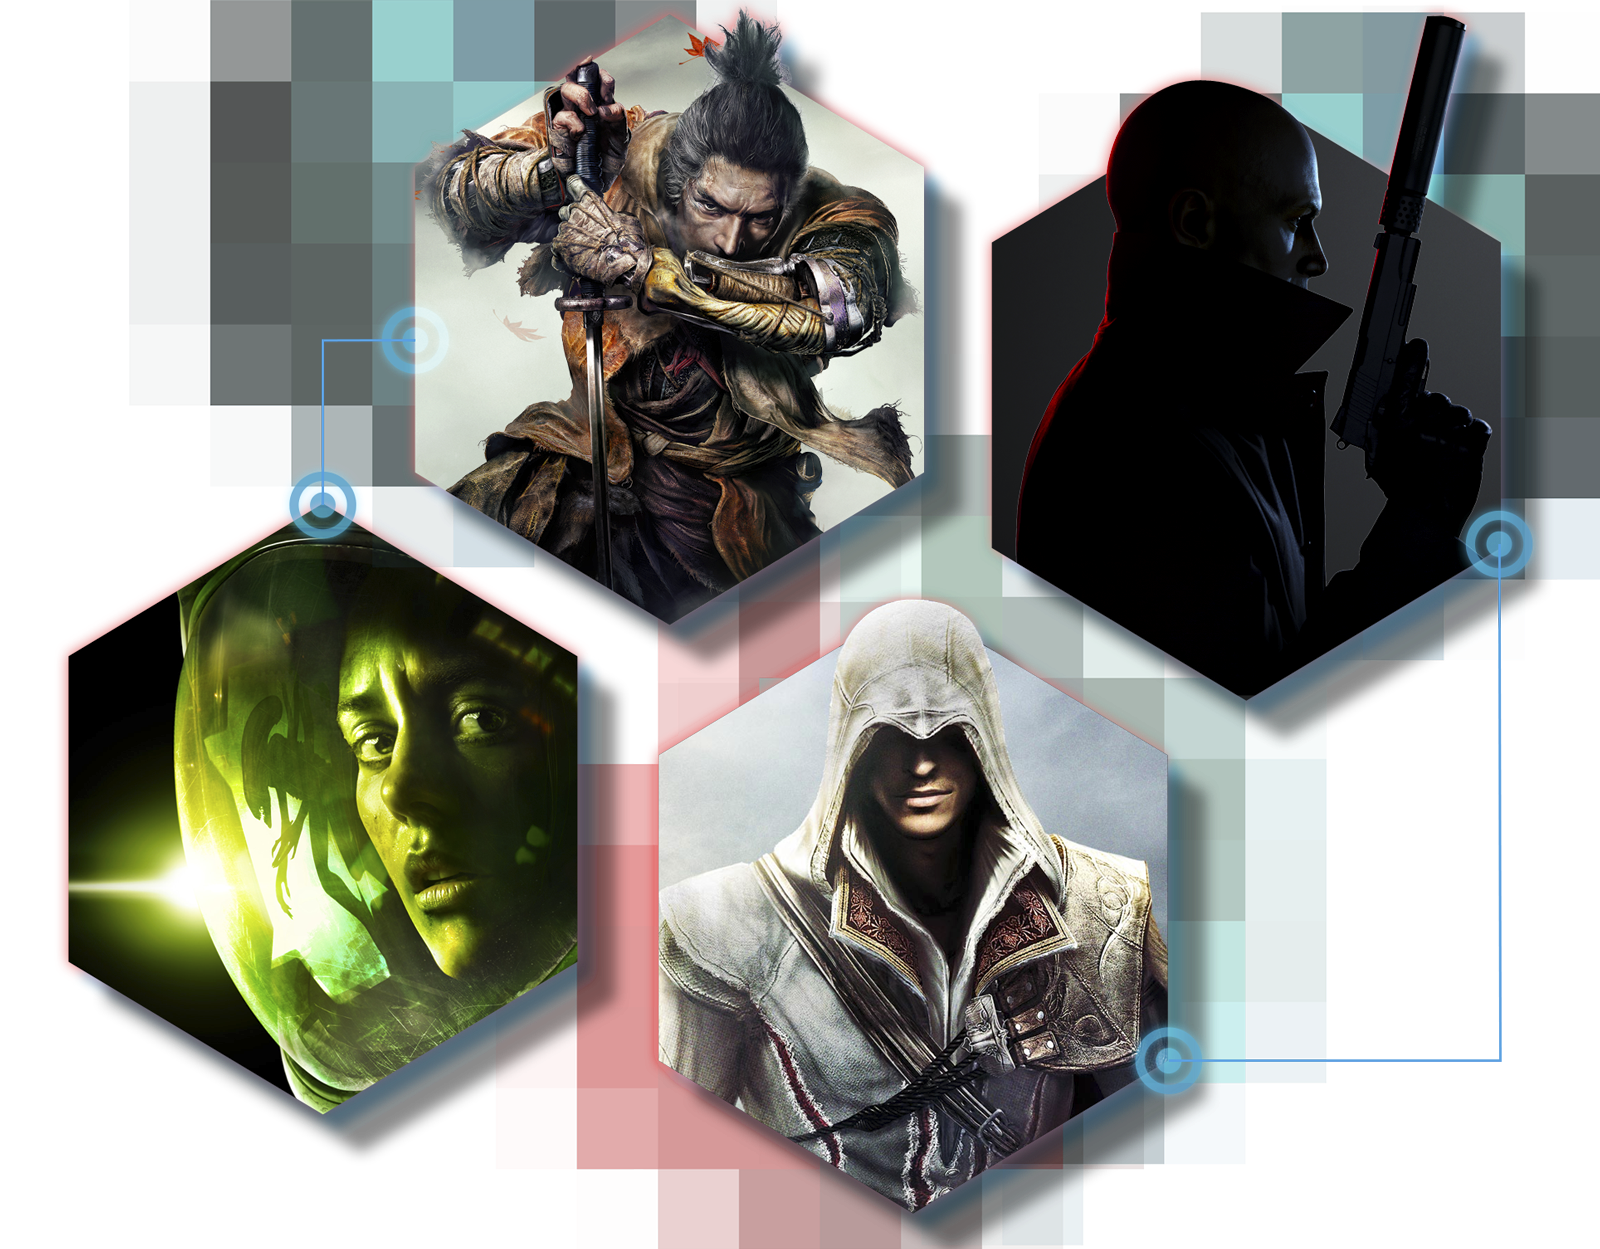 Werbebilder für Stealth-Spiele mit Artwork von Sekiro: Shadows Die Twice, Hitman 3, Alien: Isolation und Assassin's Creed: The Ezio Collection